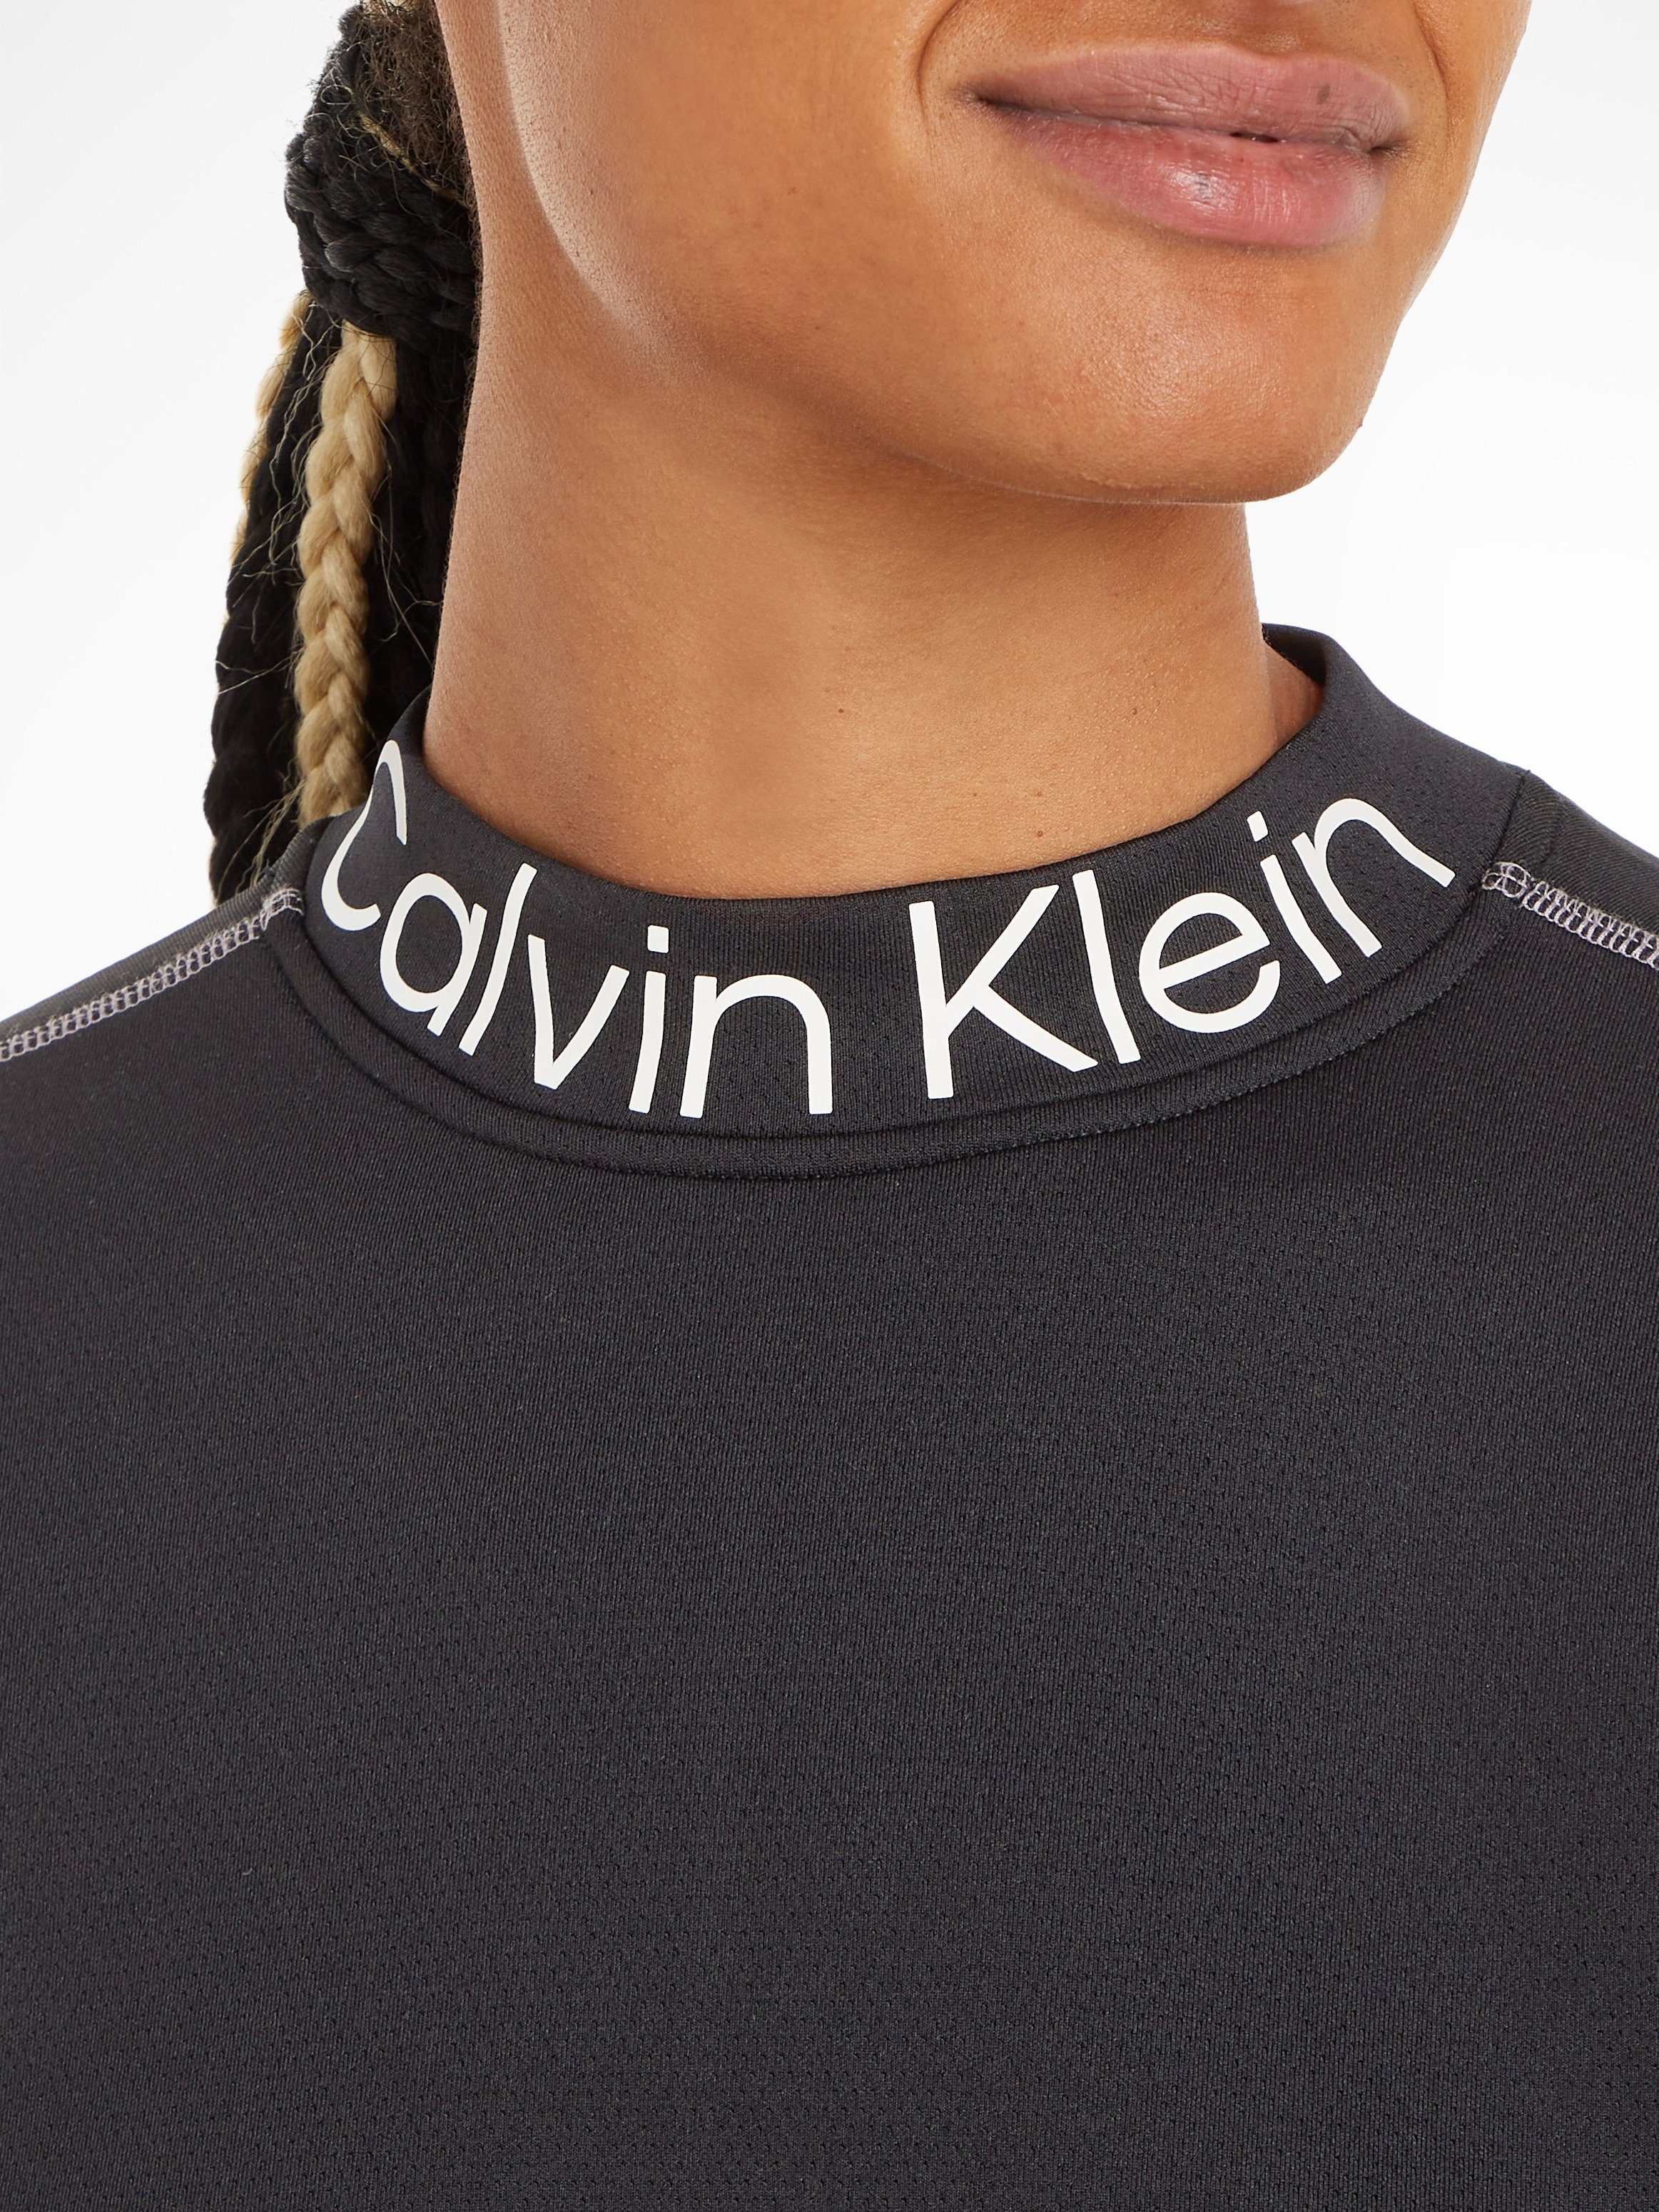 Calvin Klein PW - schwarz Pullover Rundhalspullover Sport